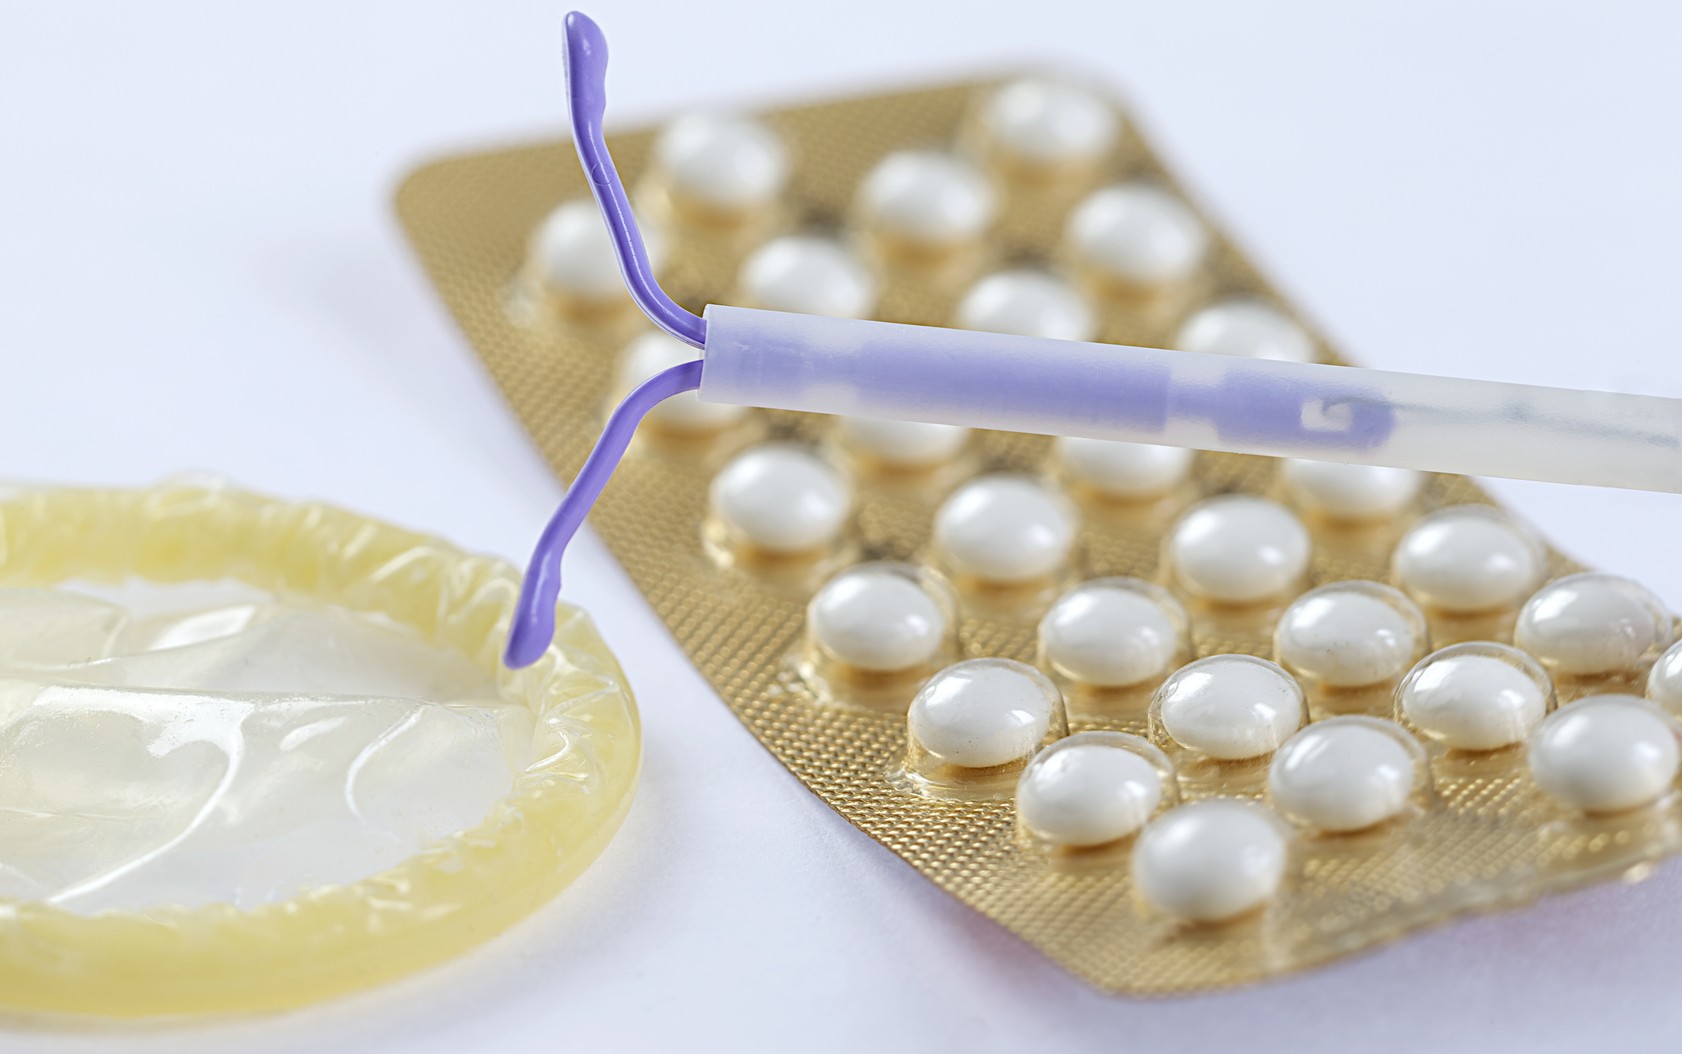 Birth Control symbole- IUD and contraceptive Pills and Condom